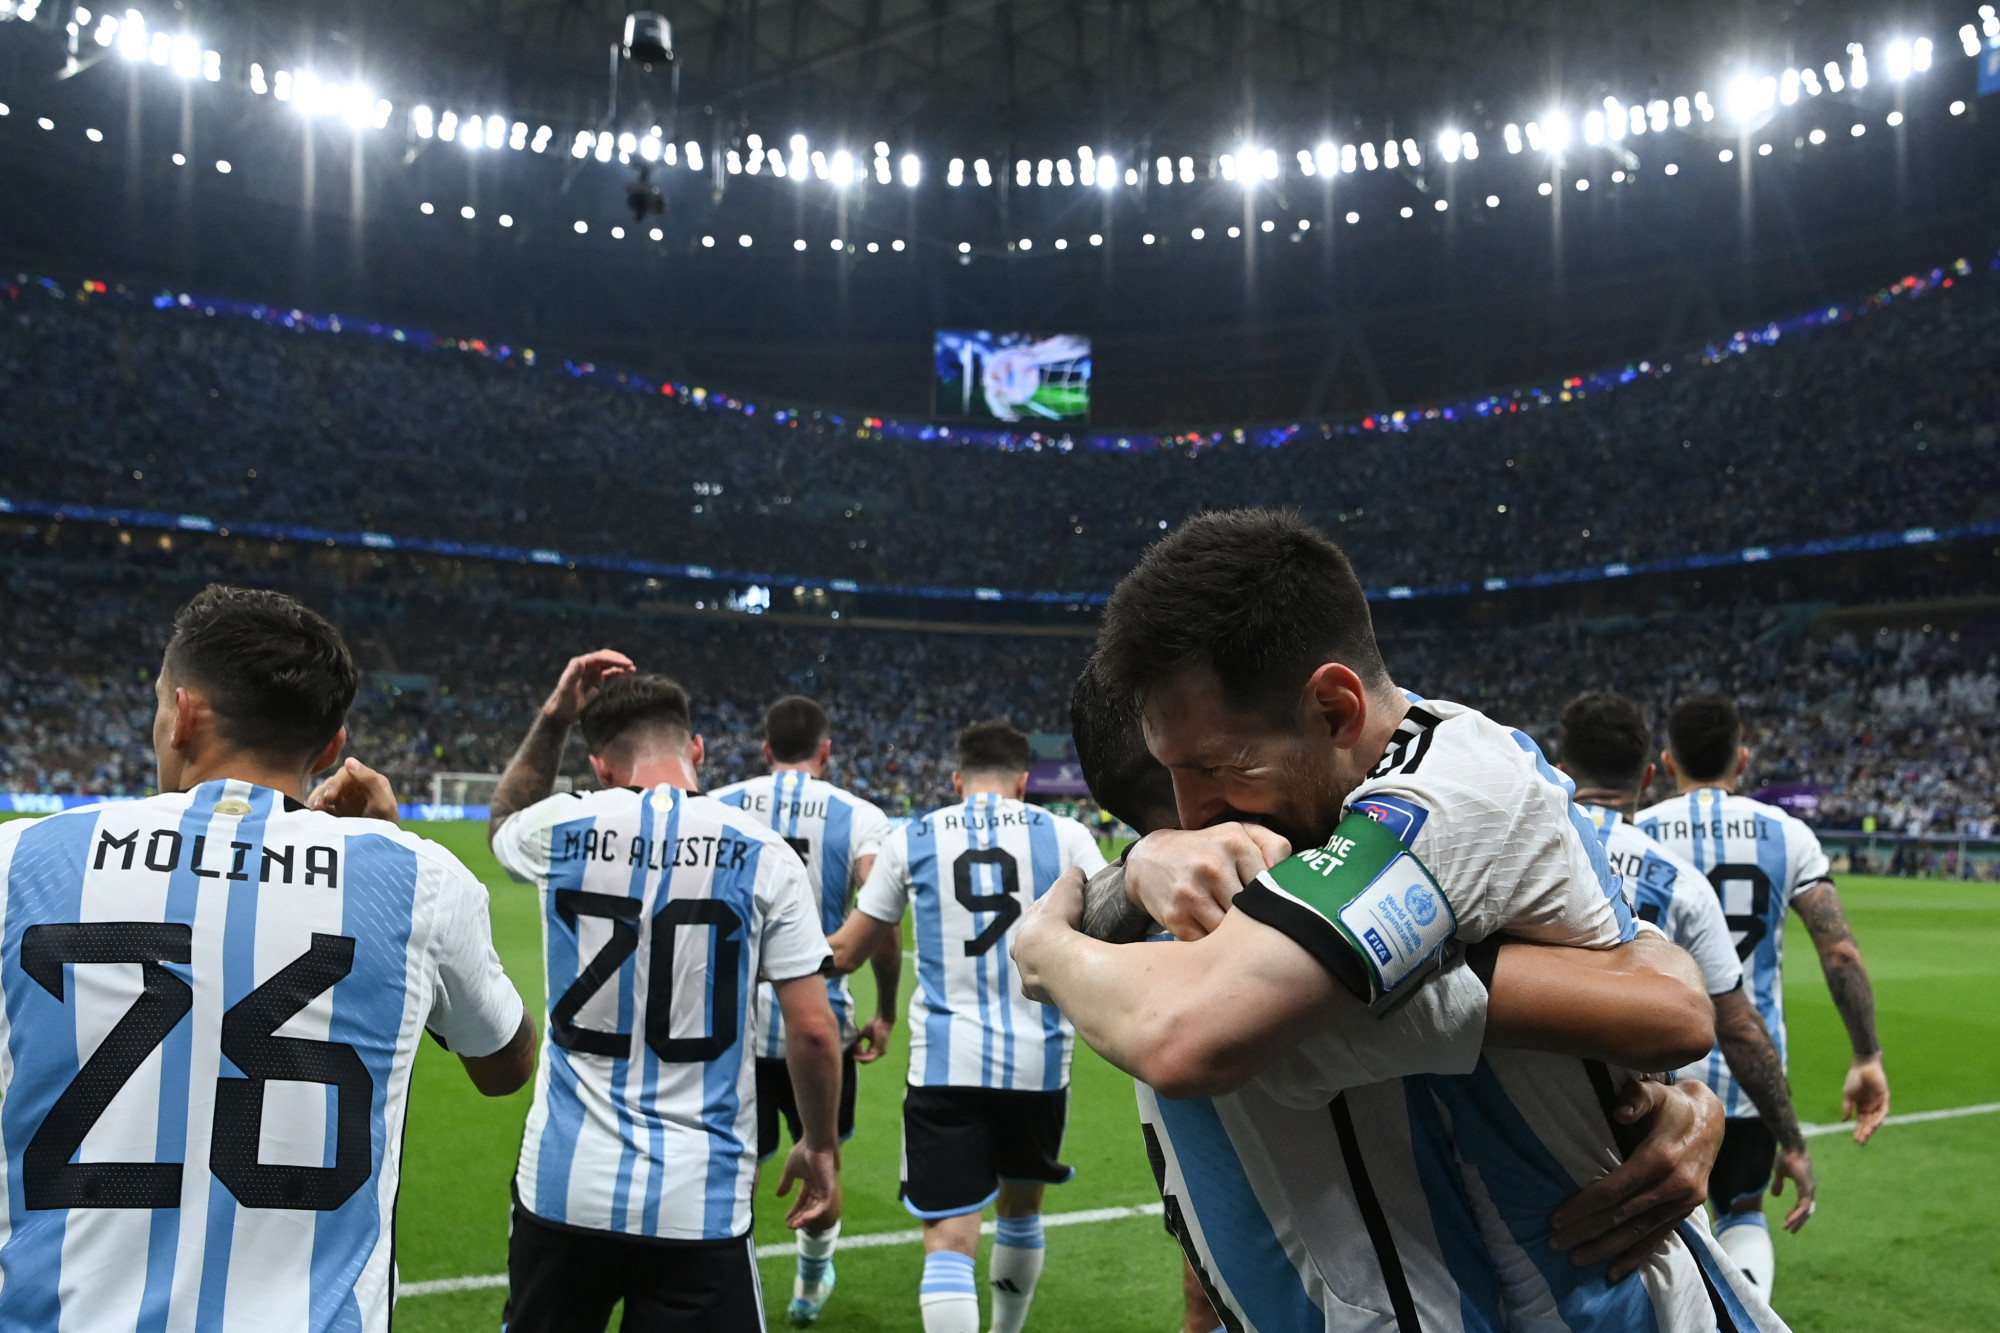 Argentína még éppen időben megérkezett a vébére